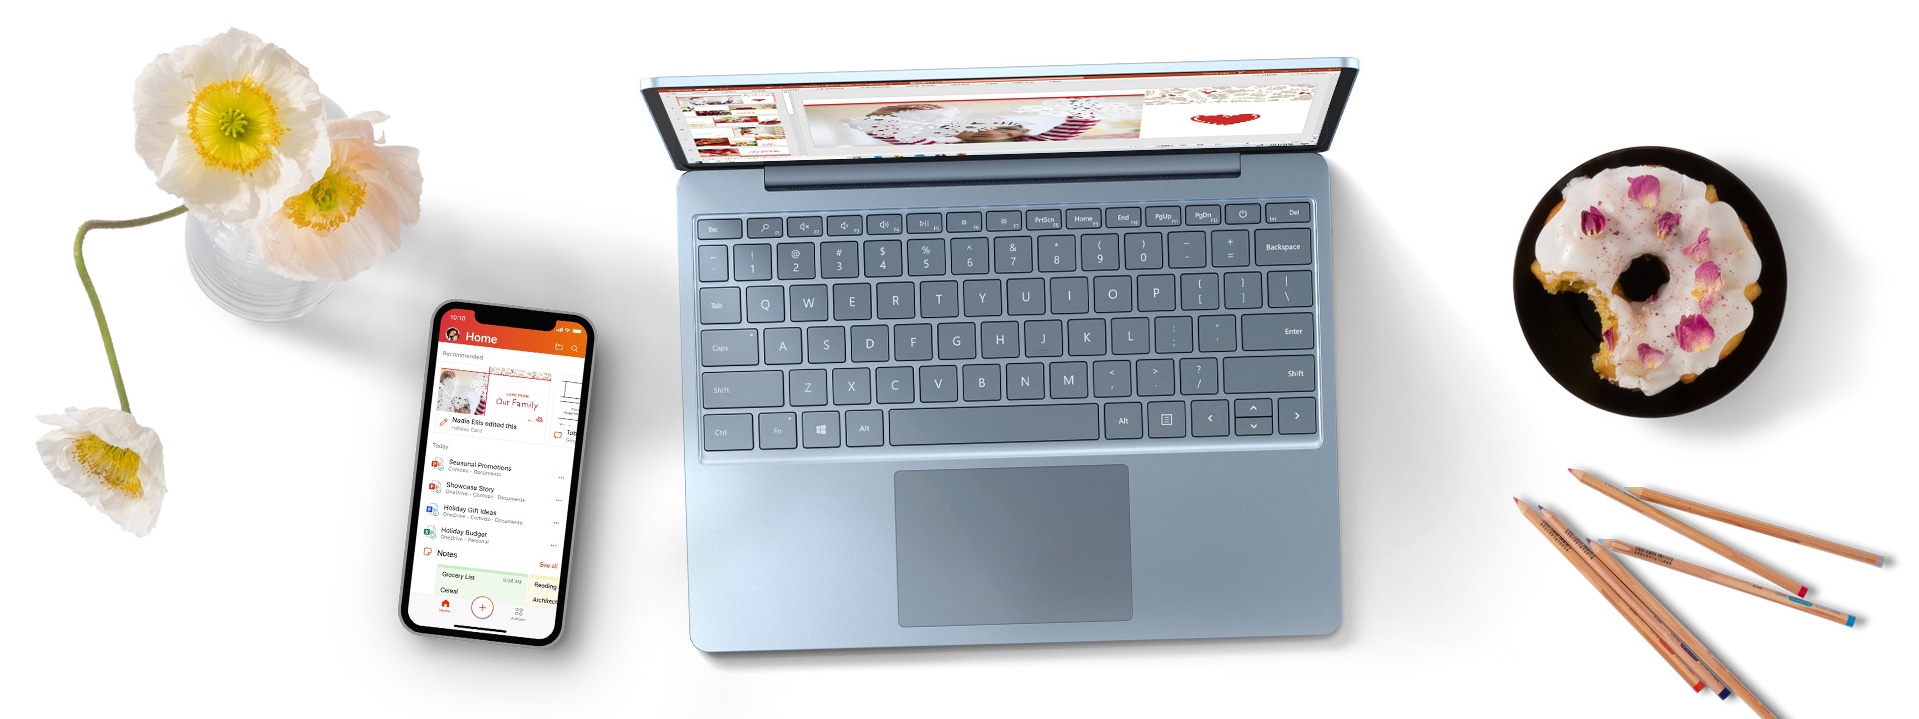 Surface Laptop Go auf einem Schreibtisch mit einem Handy, Blumen und einem Donut auf einem Teller